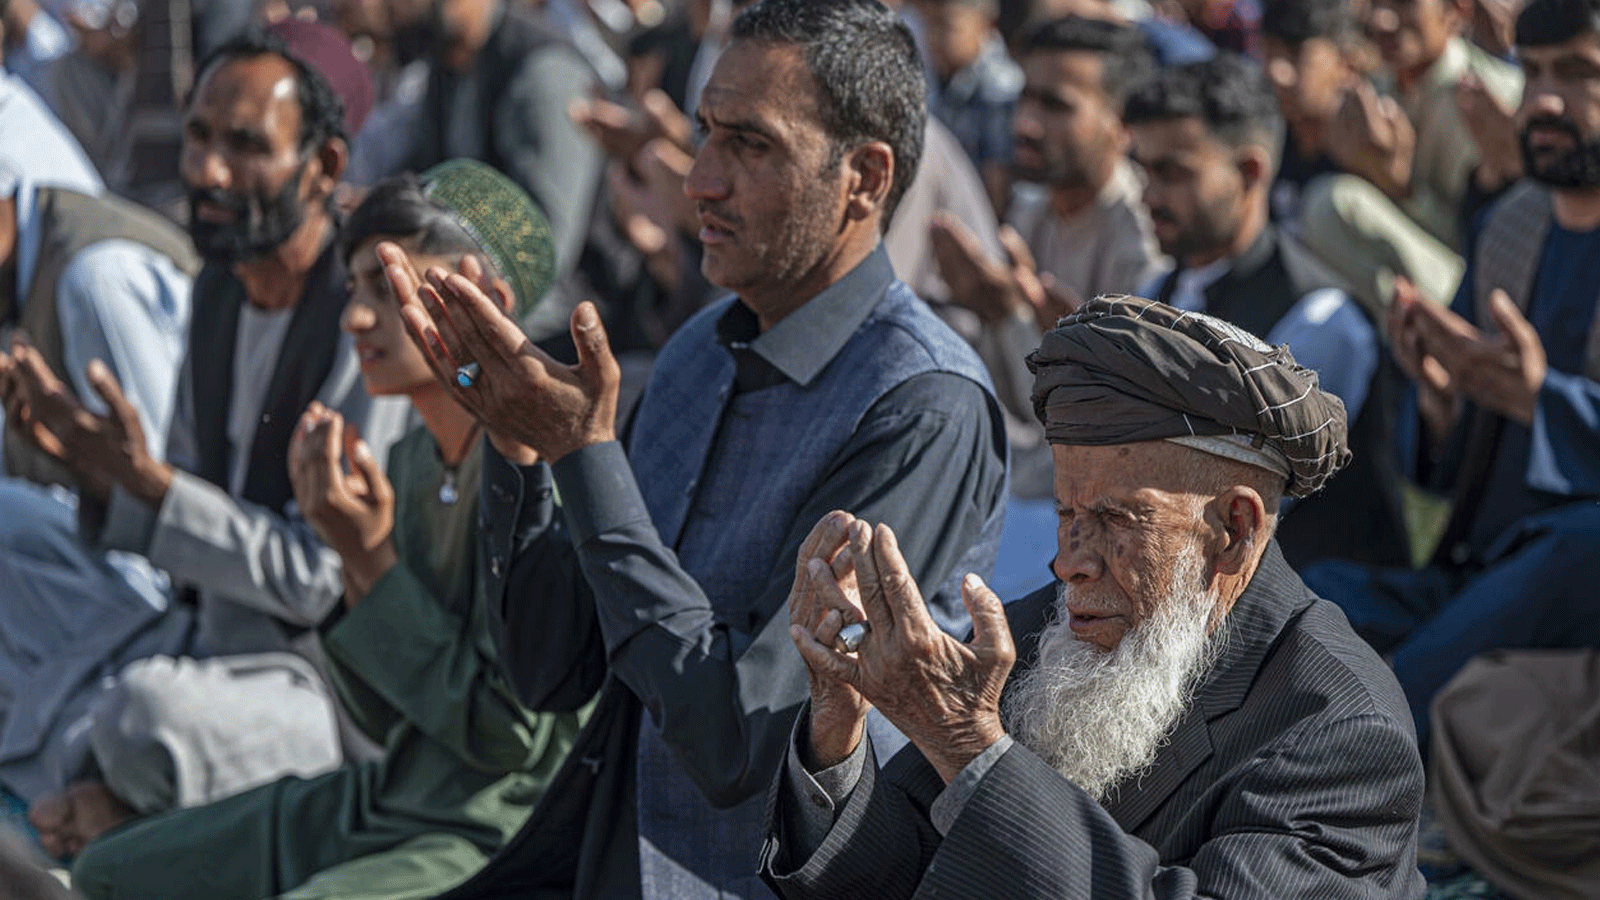 المسلمون في كابول يؤدون صلاة عيد الفطر بمناسبة انتهاء شهر رمضان المبارك خارج مسجد يوم الأحد